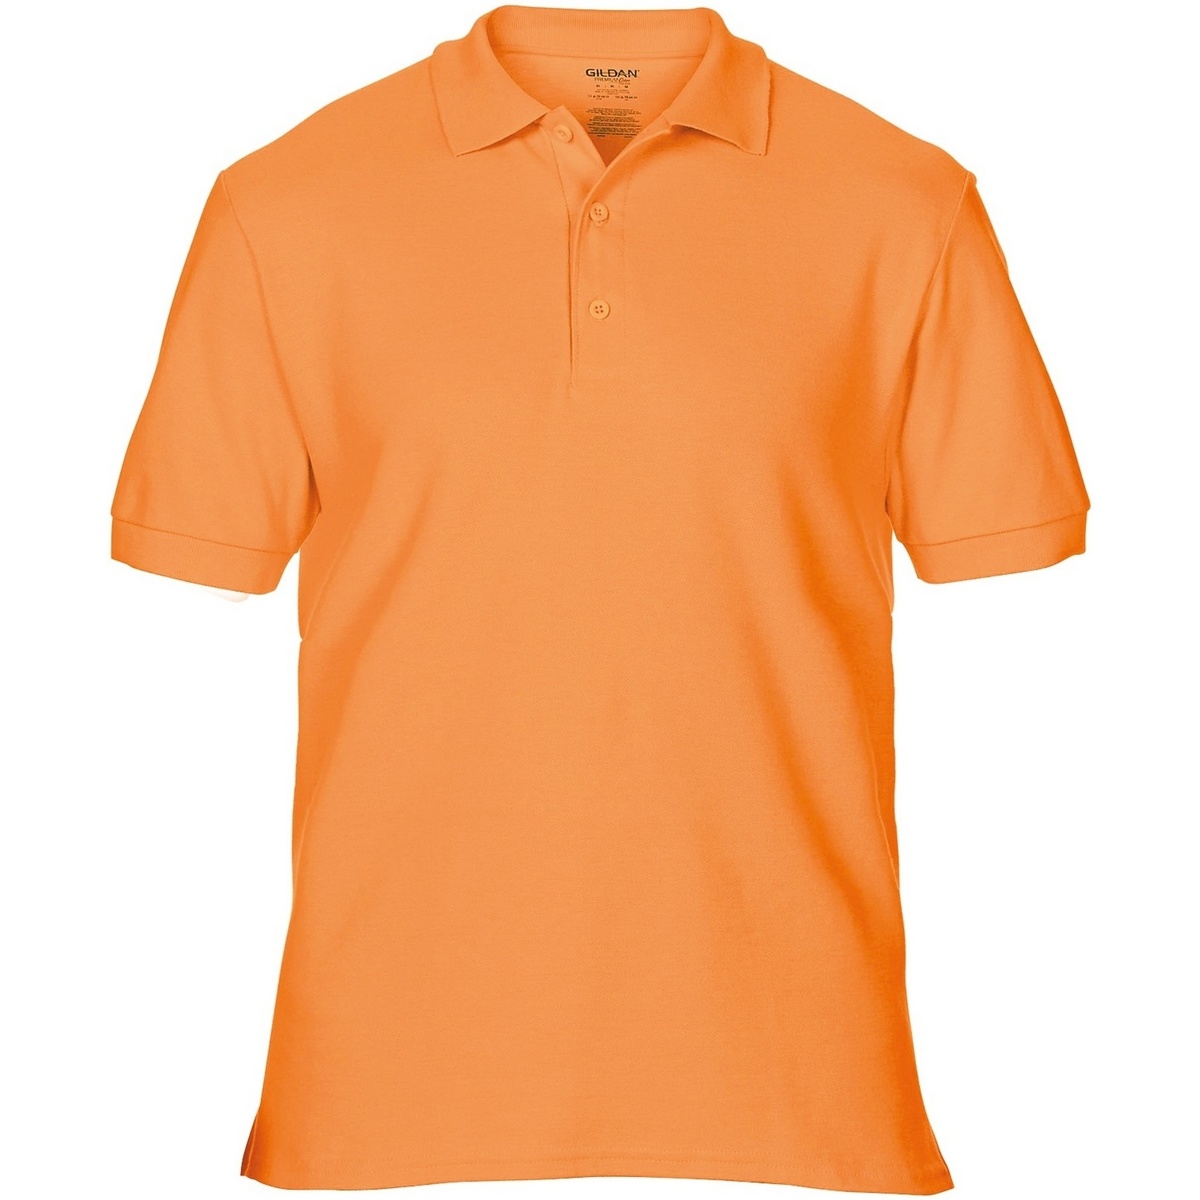 Vêtements Homme Dieses beige Sweatshirt von Premium Orange